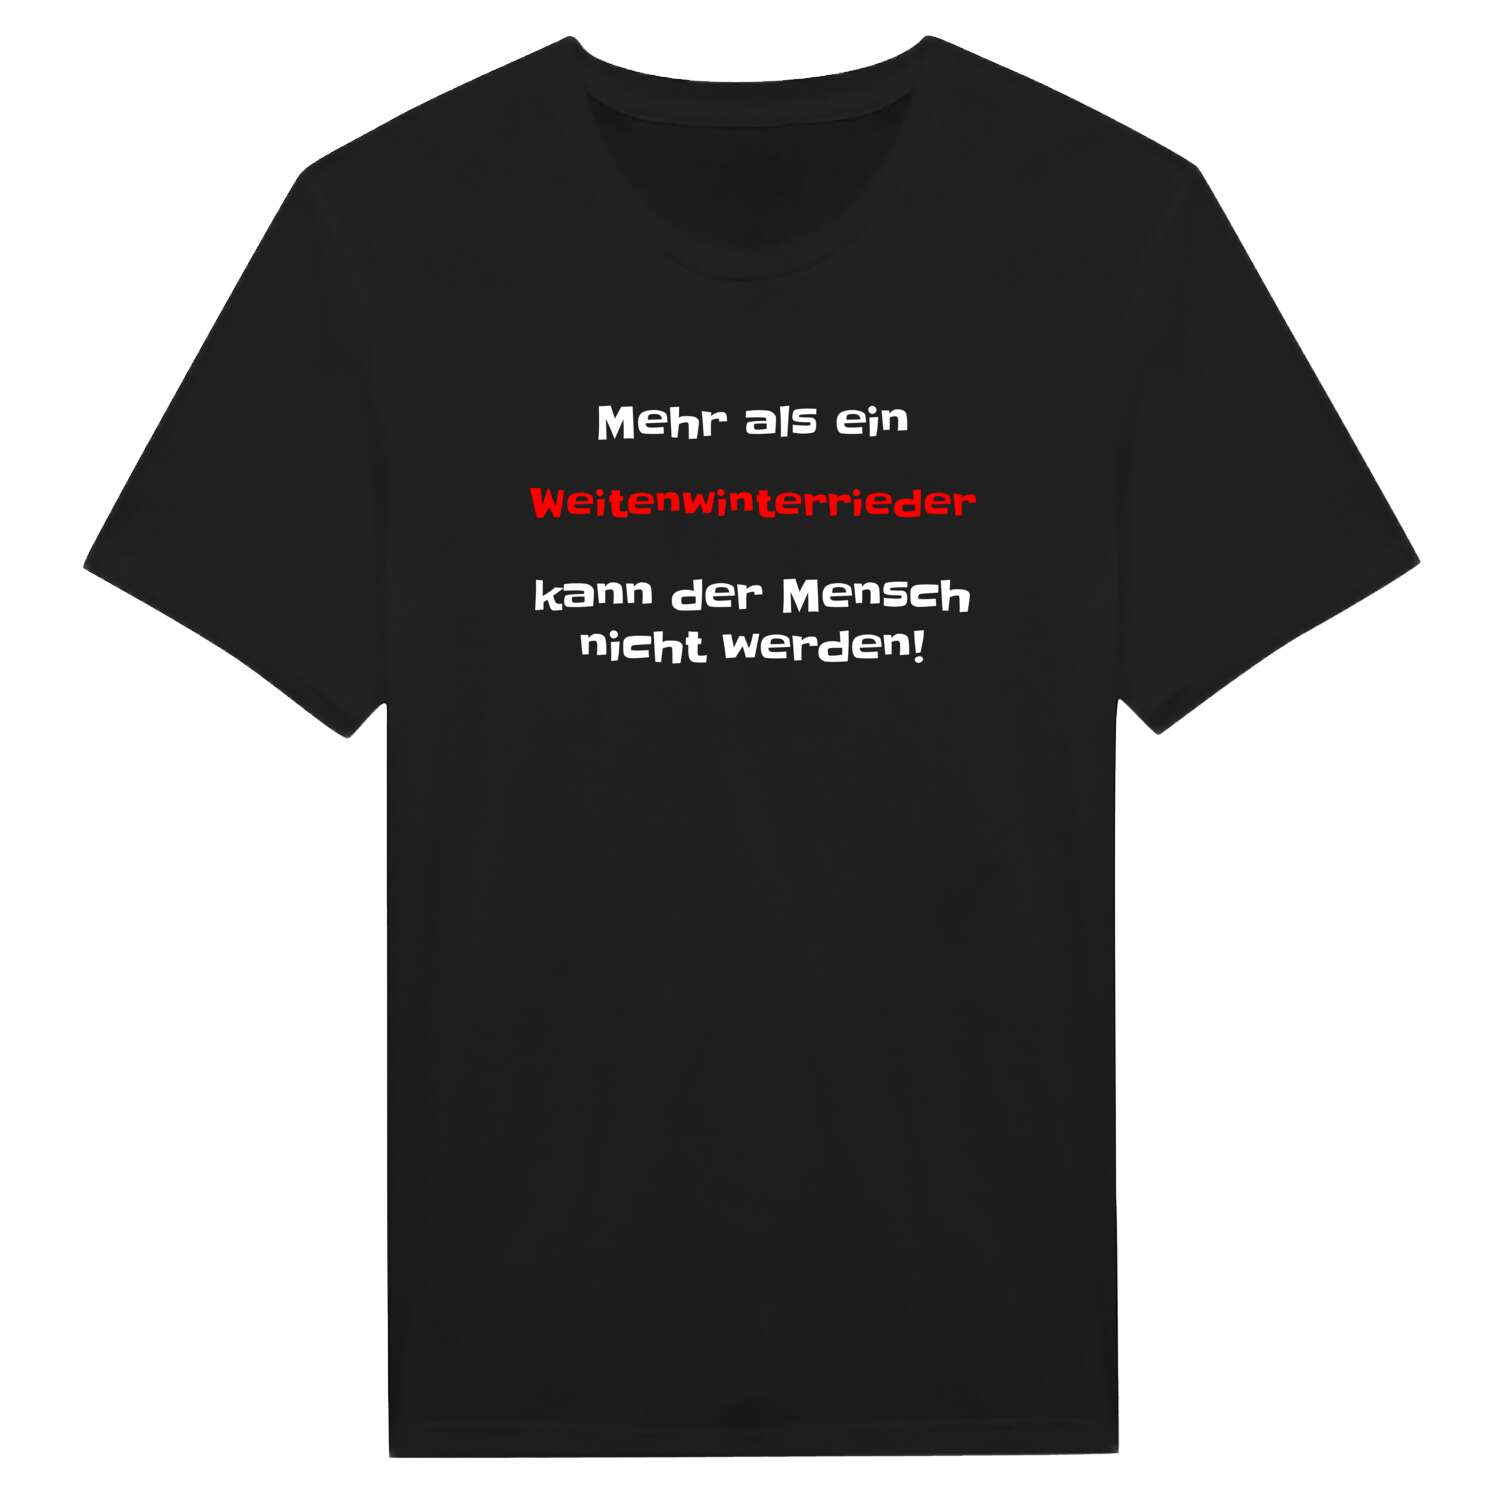 Weitenwinterried T-Shirt »Mehr als ein«